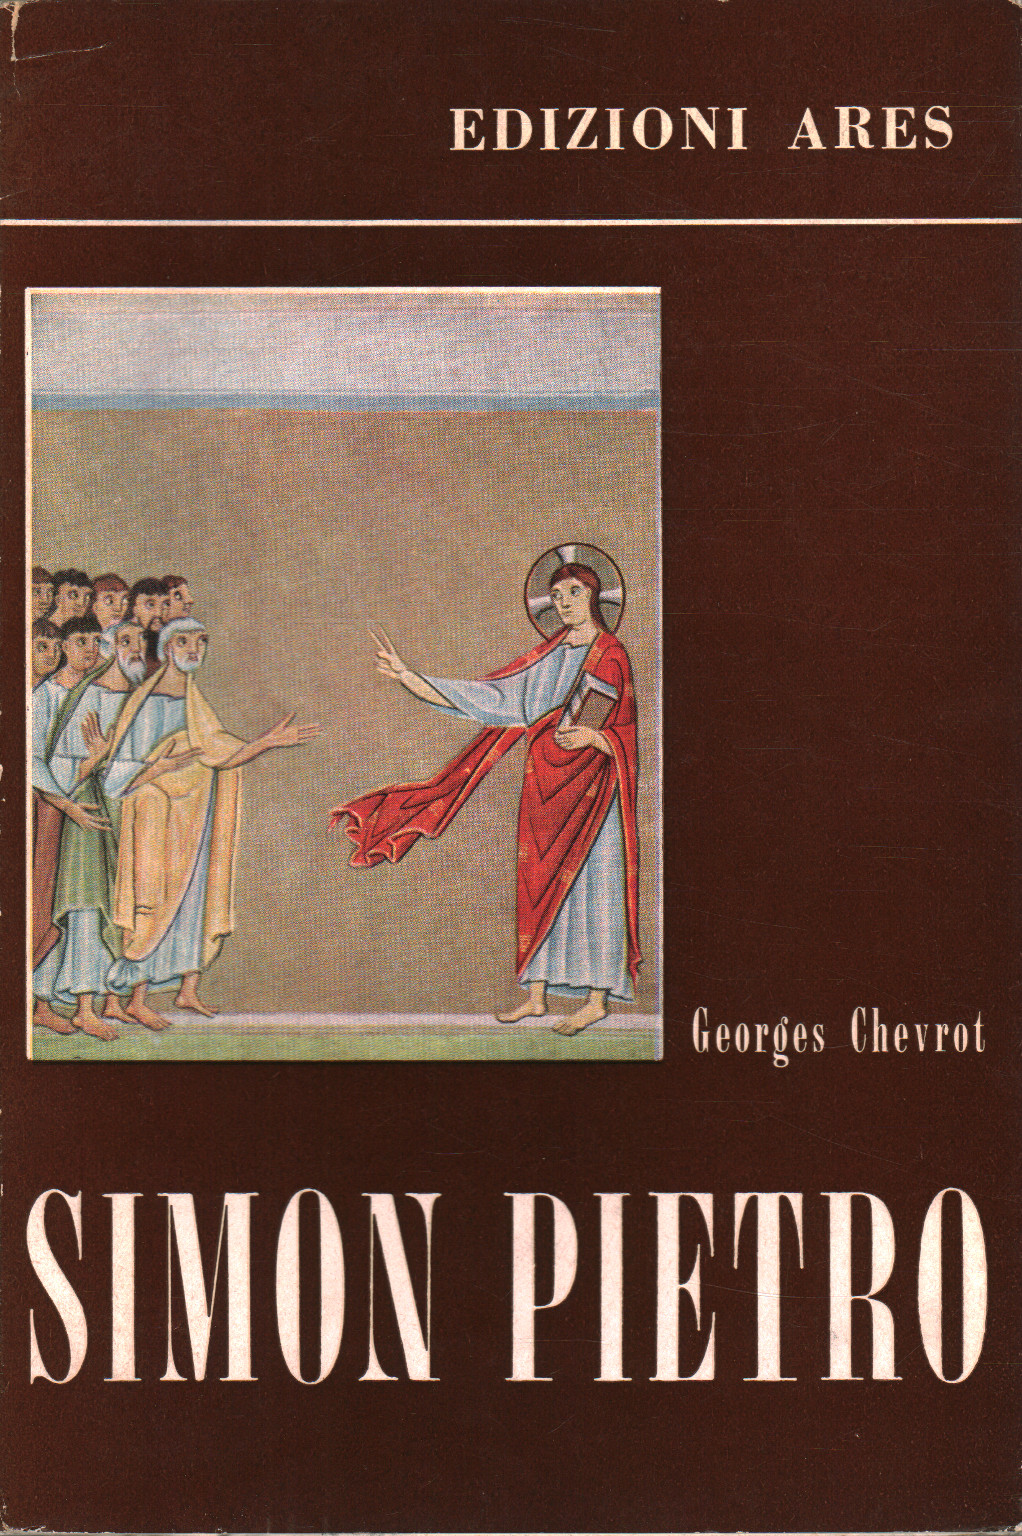 Simon Peter, s.a.